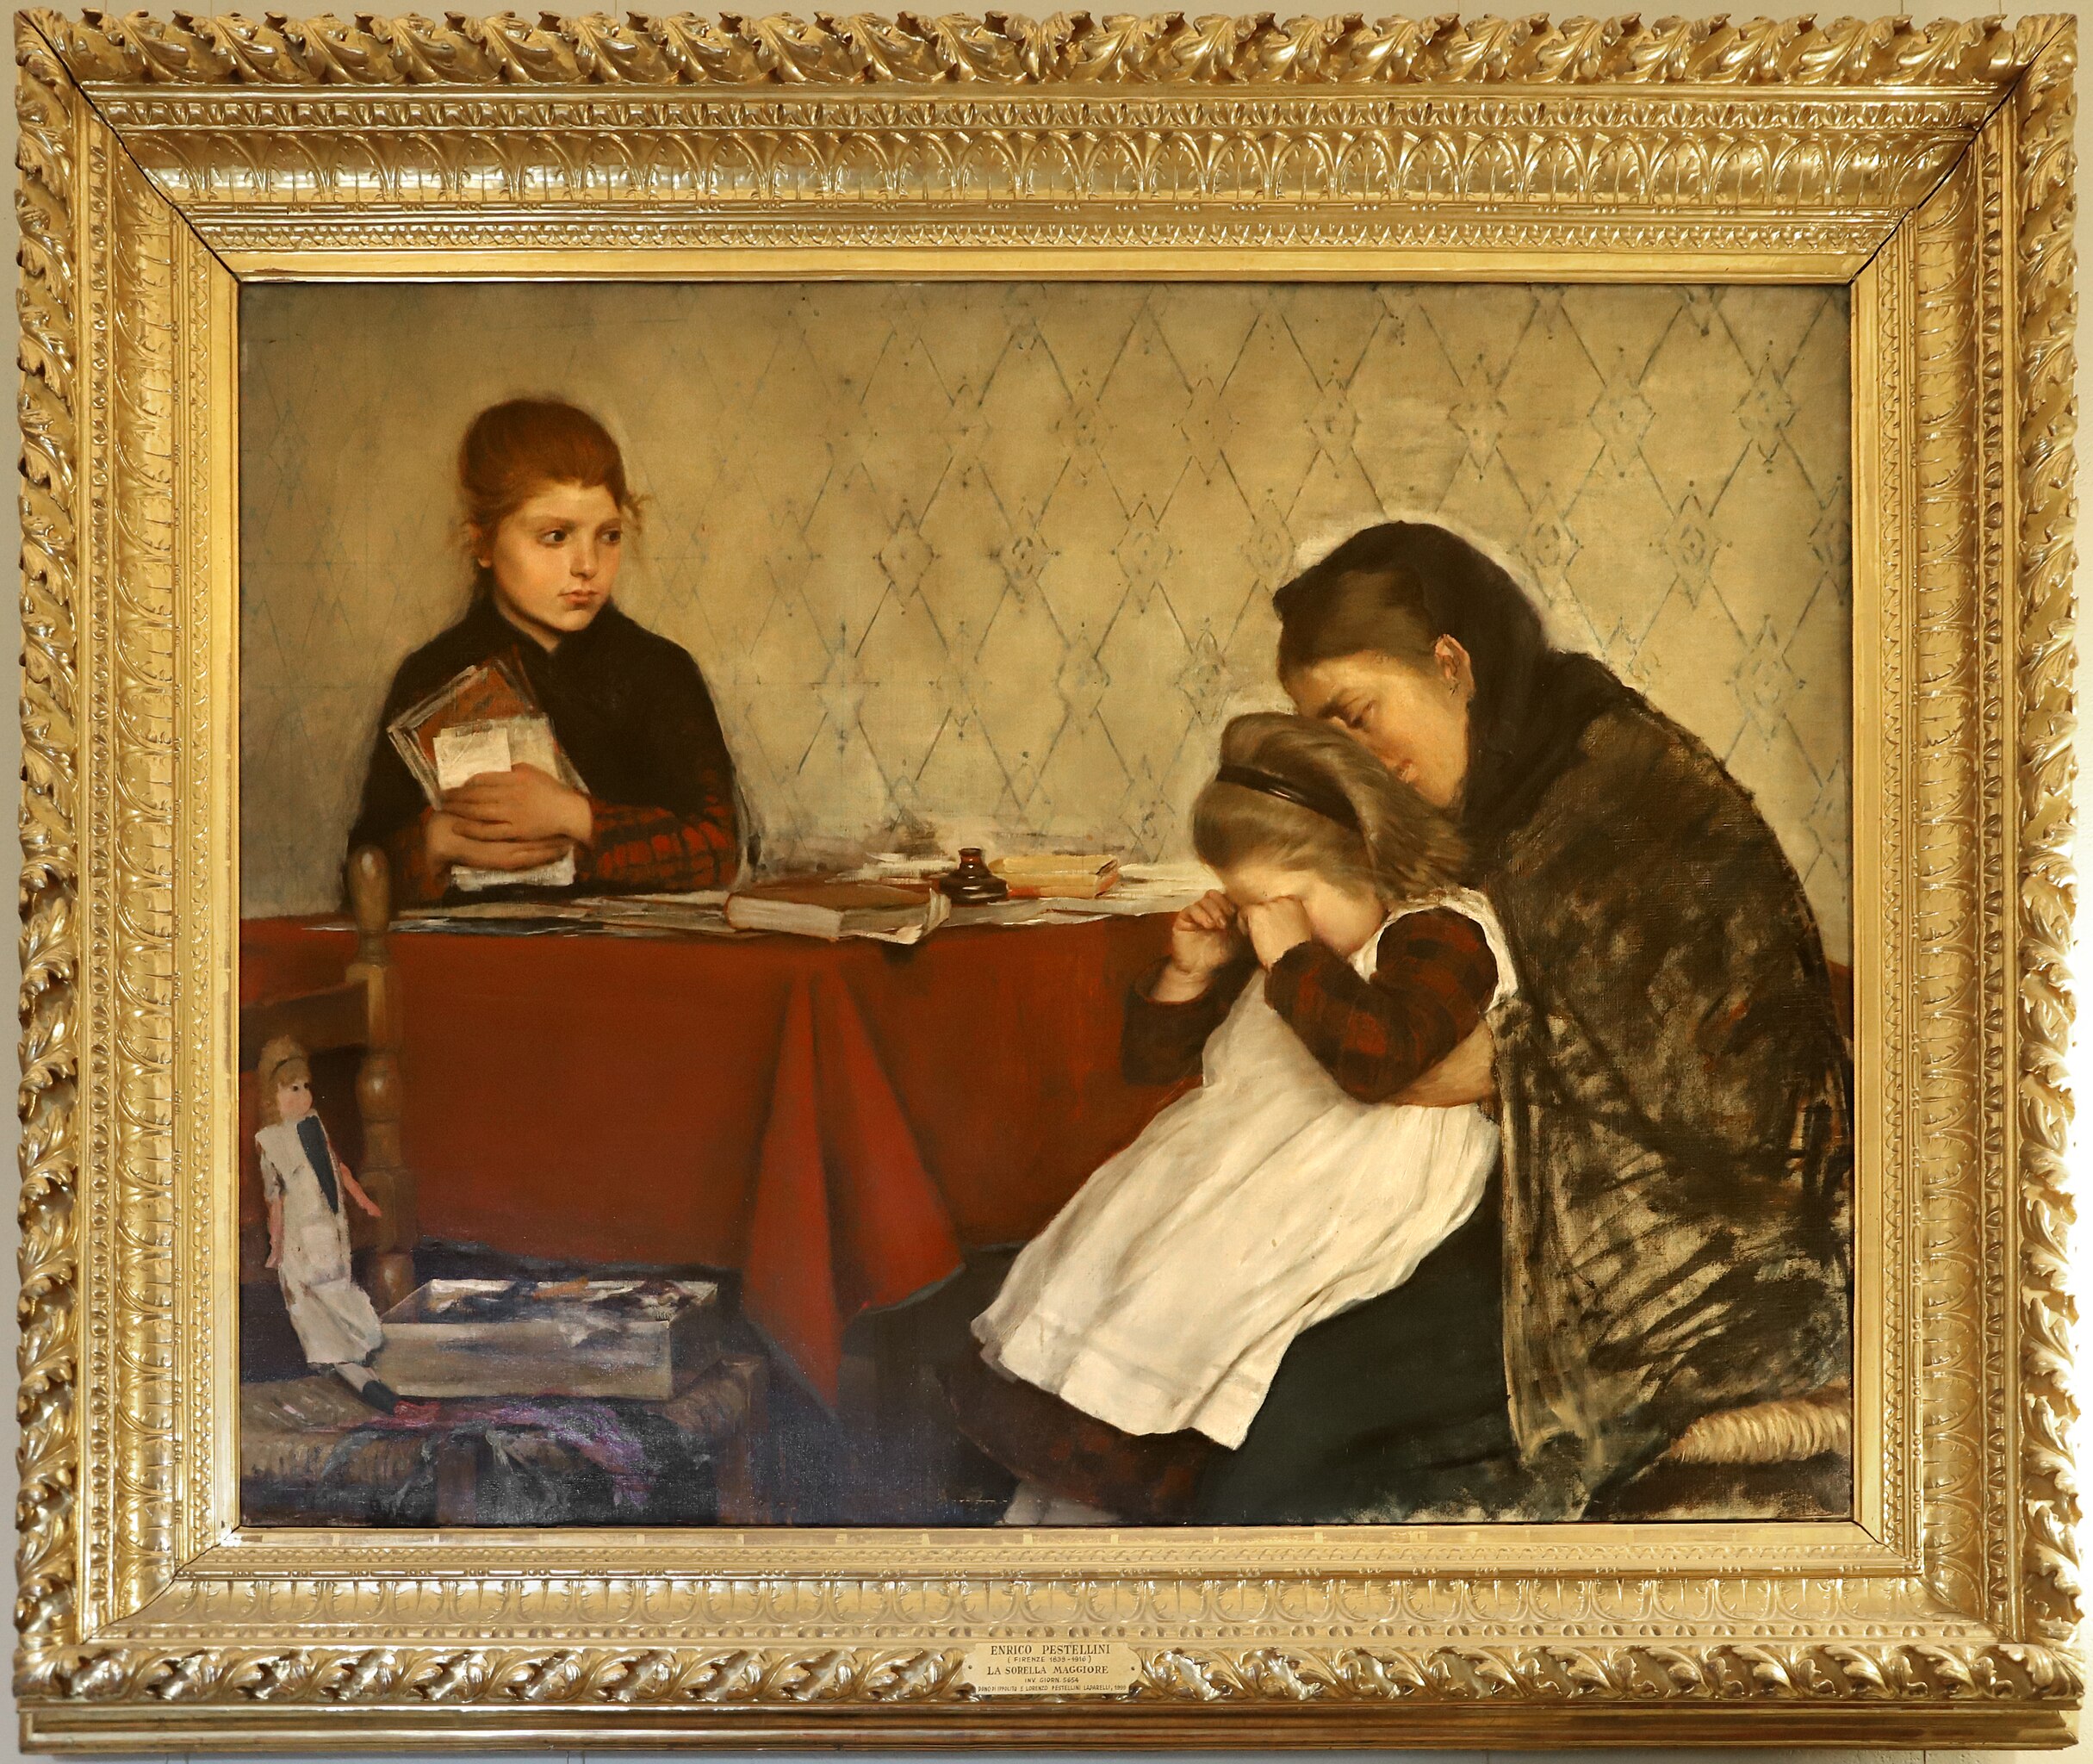 File:Enrico pestellini, la sorella maggiore, 1887.jpg - Wikidata